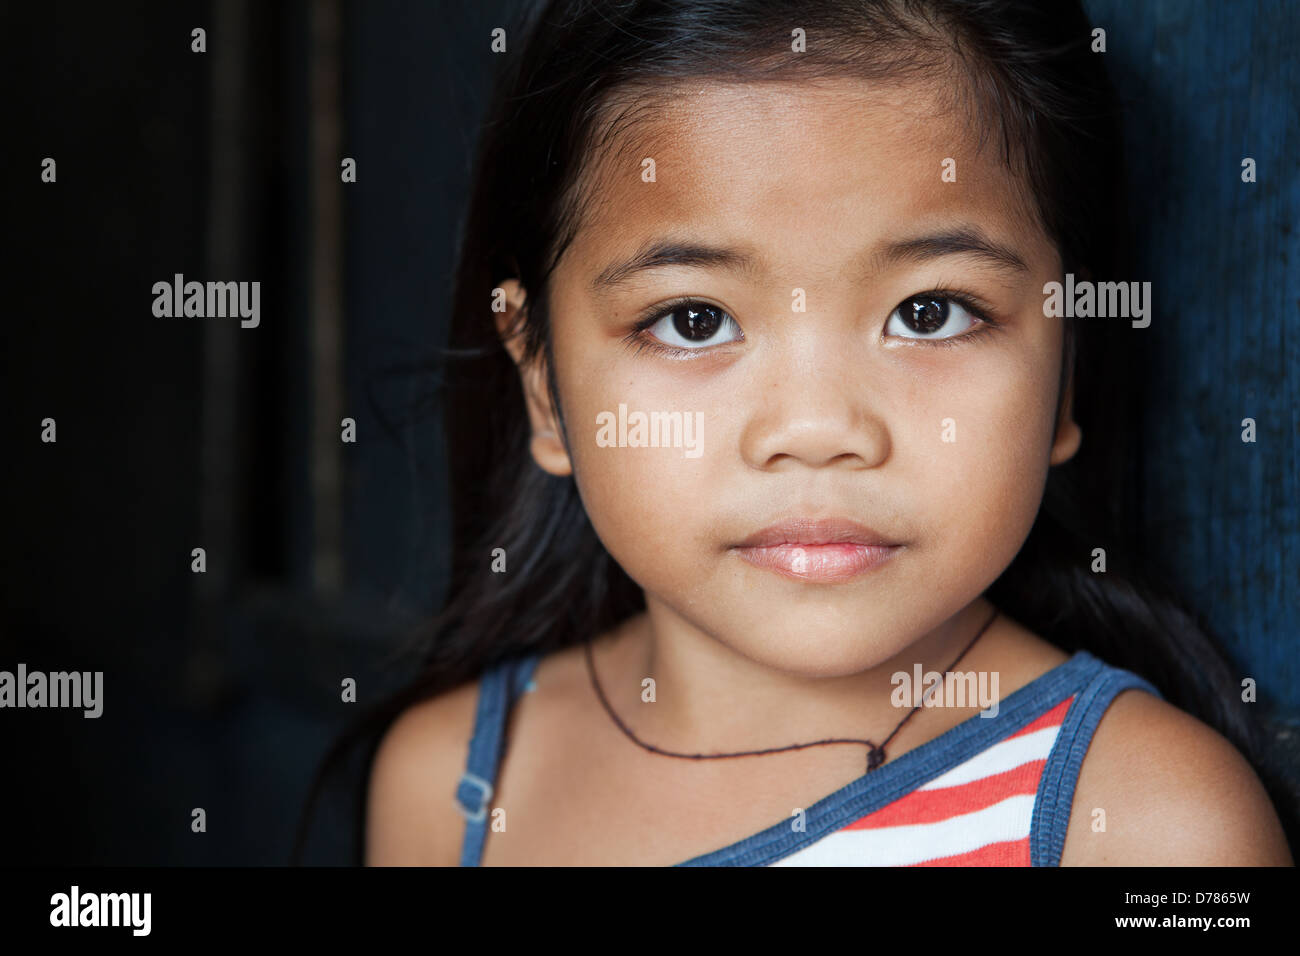 Asiatische Kinder Porträt - junges Mädchen von den Philippinen gegen die Wand - Tageslicht Stockfoto